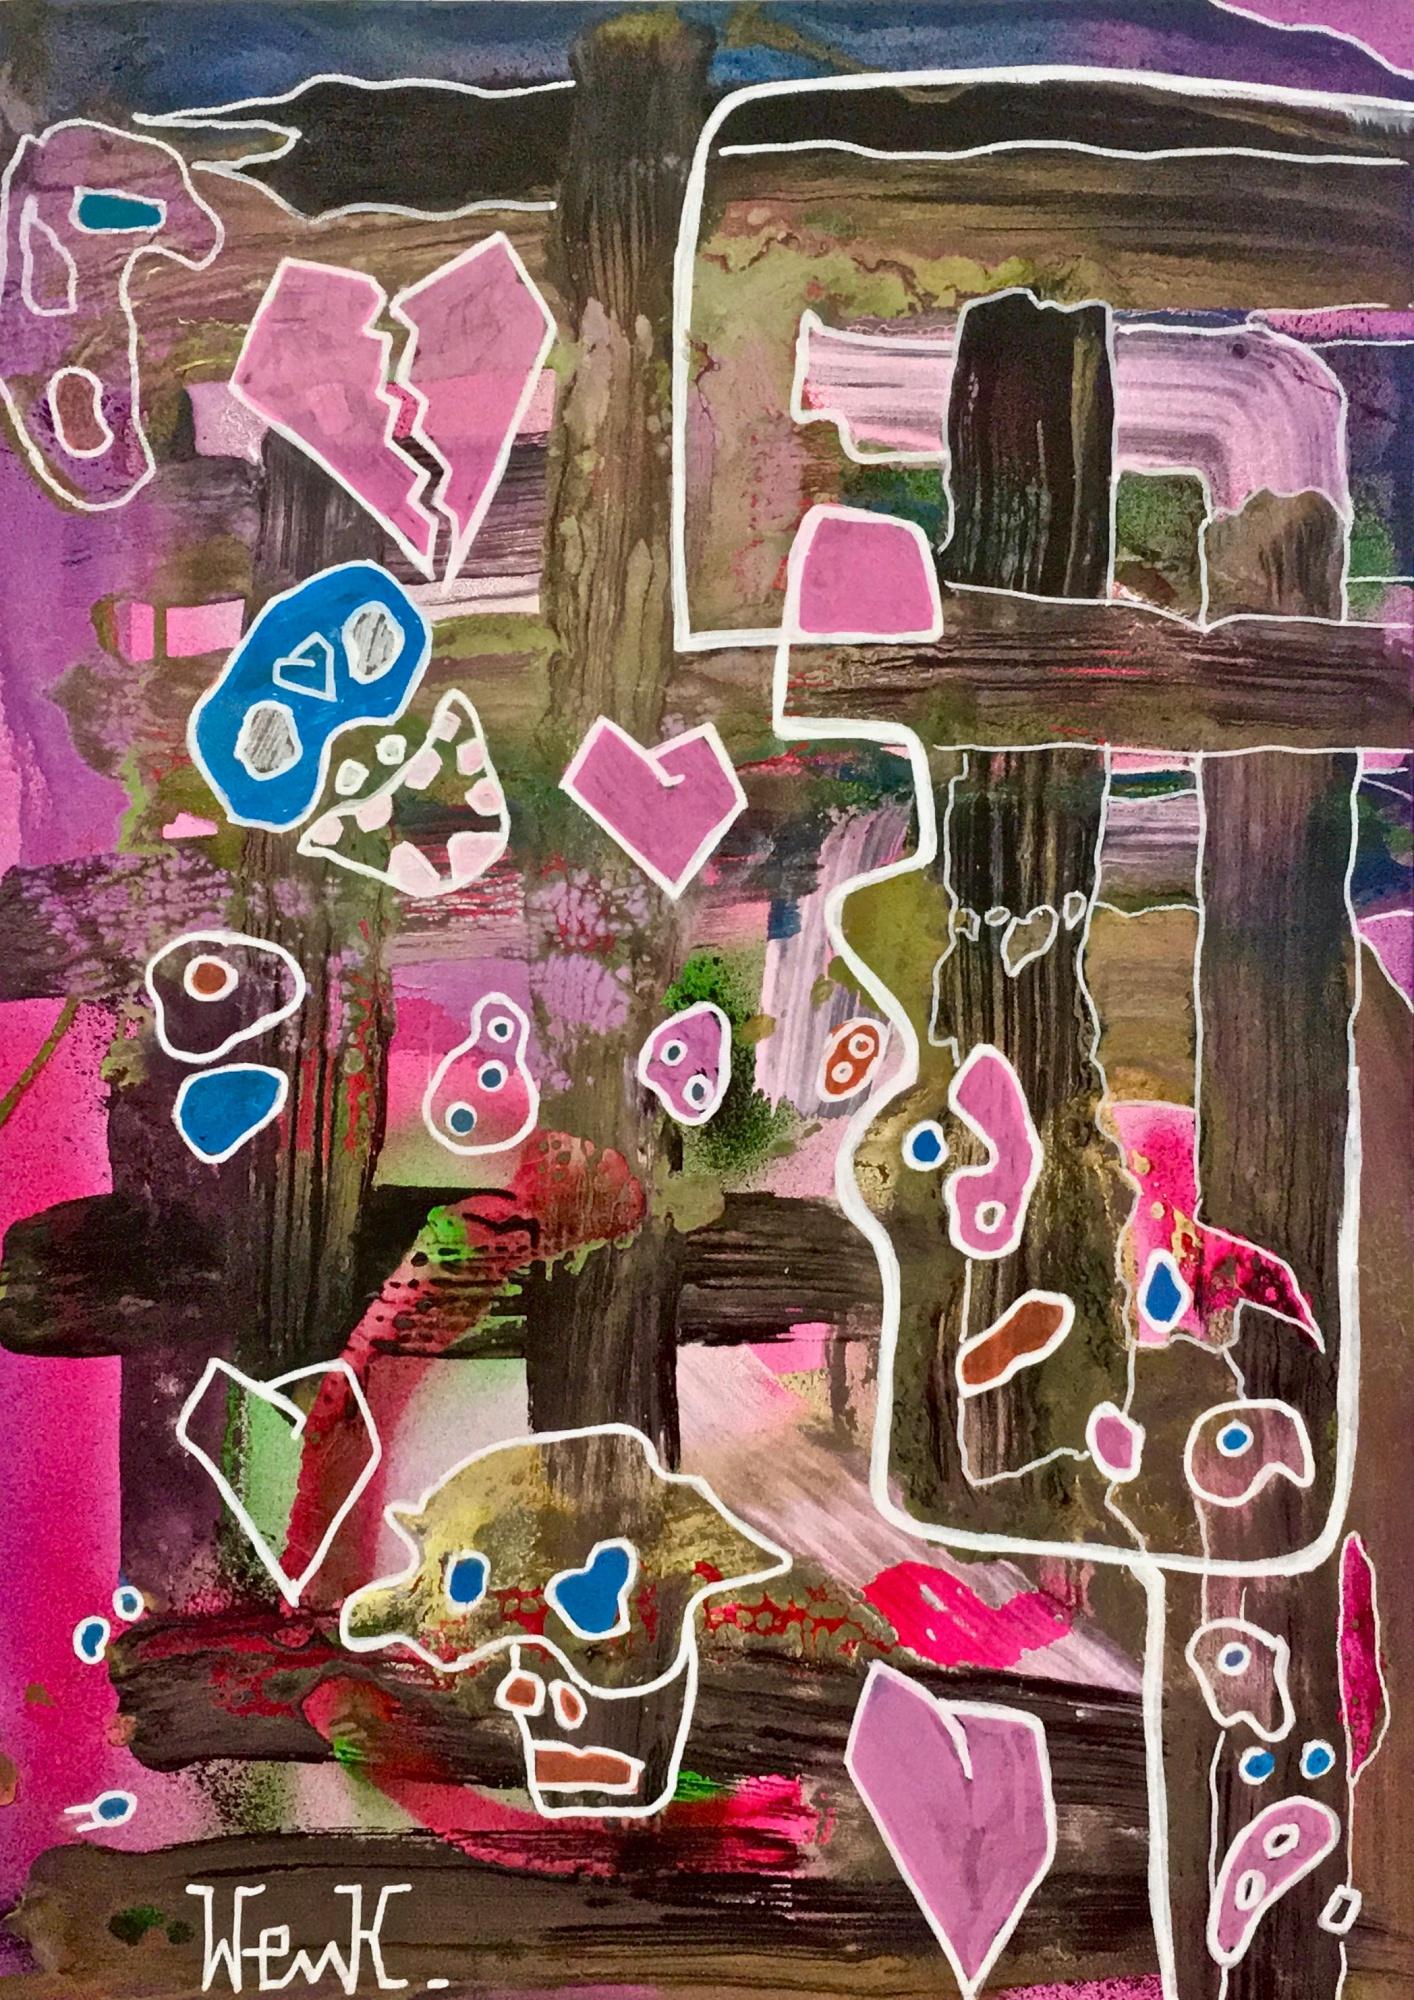 ""Uomo alla finestra (Sbarre)" von Enzio Wenk, 2018- Acryl, Öl, Expressionismus